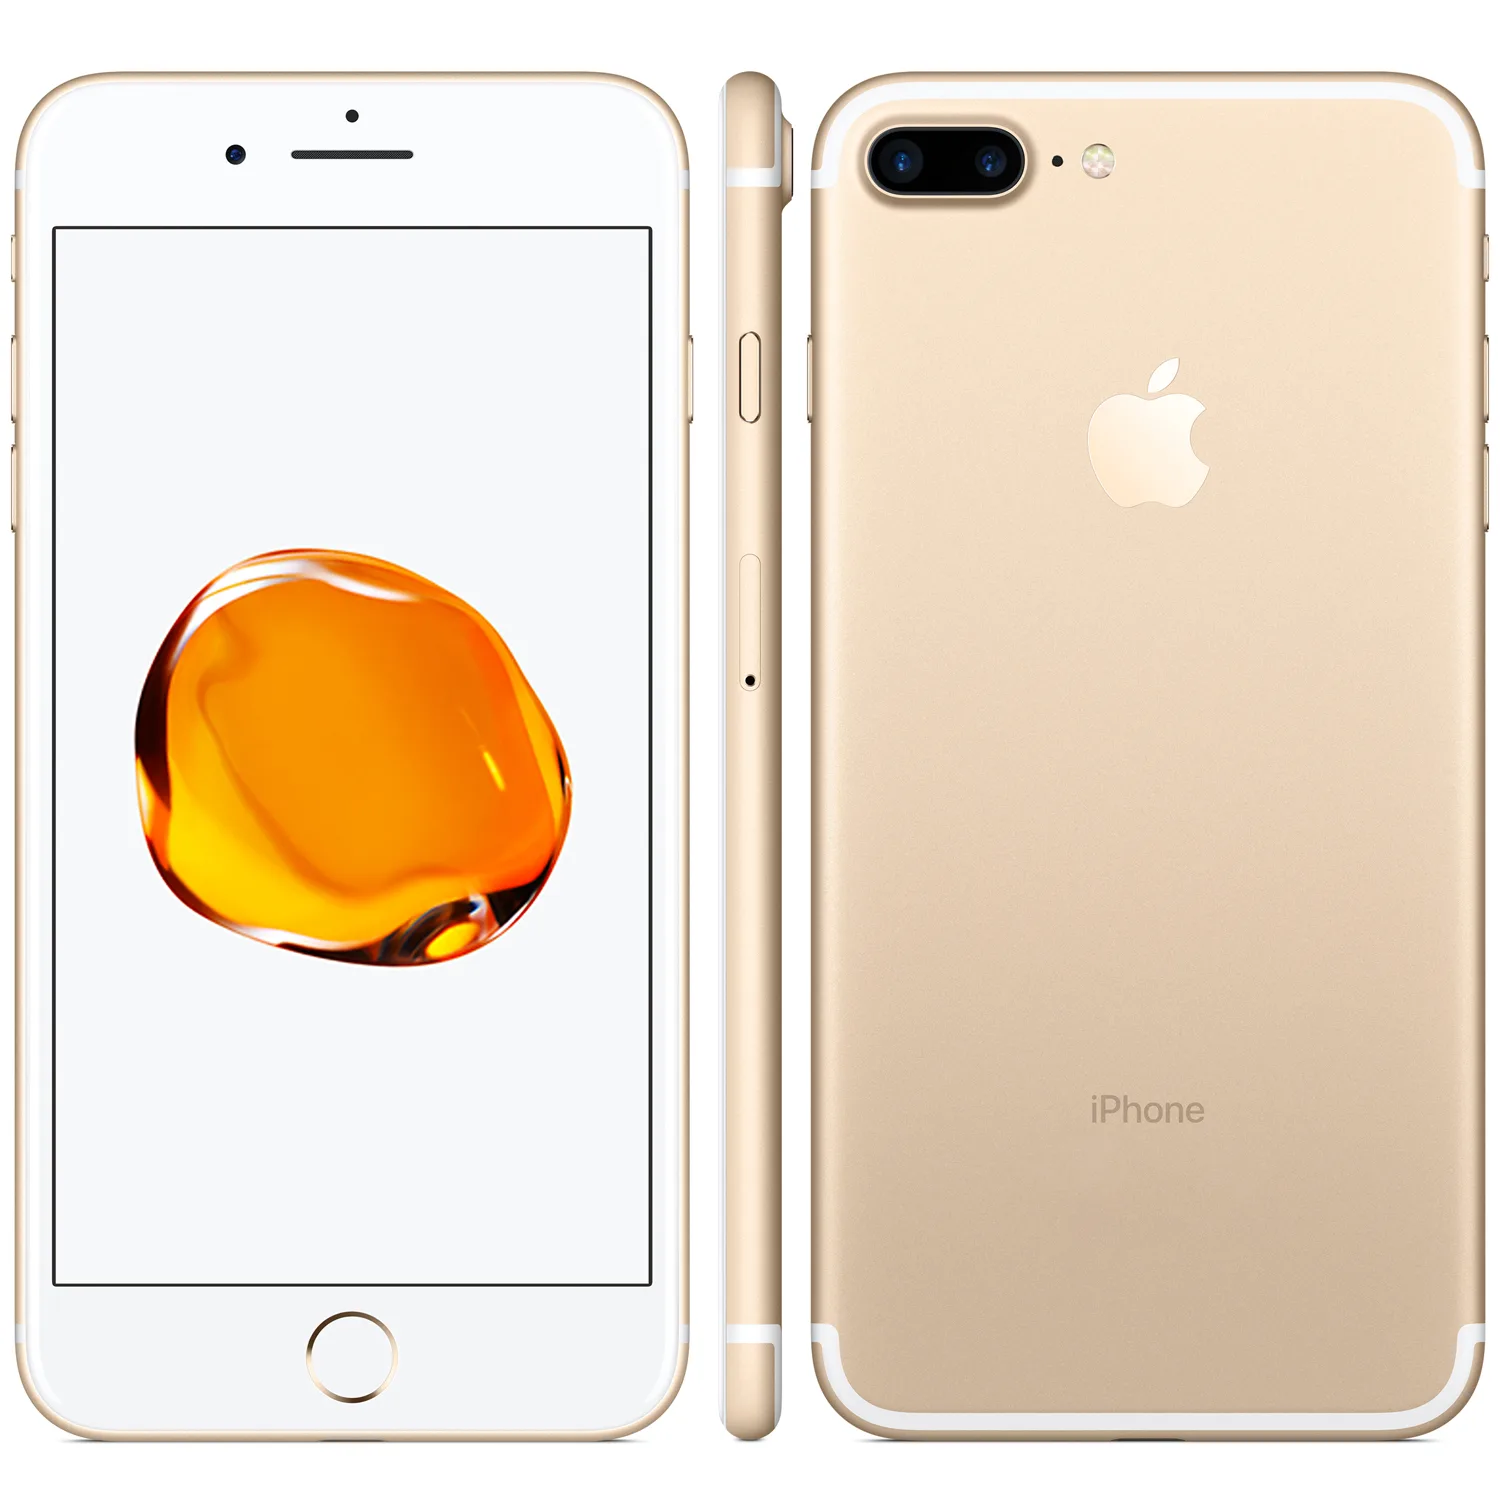 Onnodig stromen kleurstof Refurbished iPhone 7 Plus 32GB goud kopen? - 2 jaar garantie! |  FixjeiPhone.nl